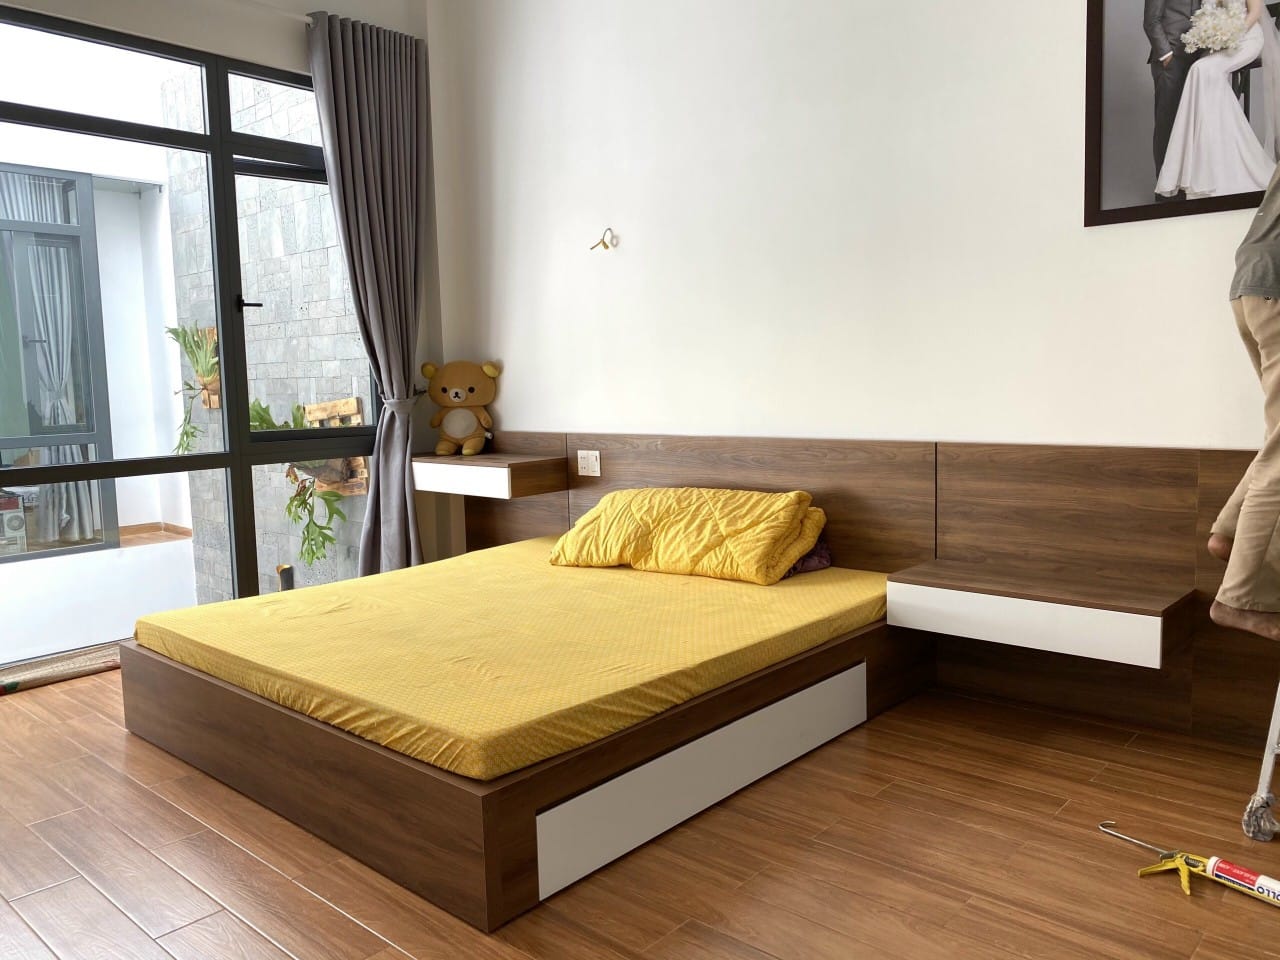 Combo nội thất phòng ngủ gỗ công nghiệp: Giá rẻ và… còn gì nữa?